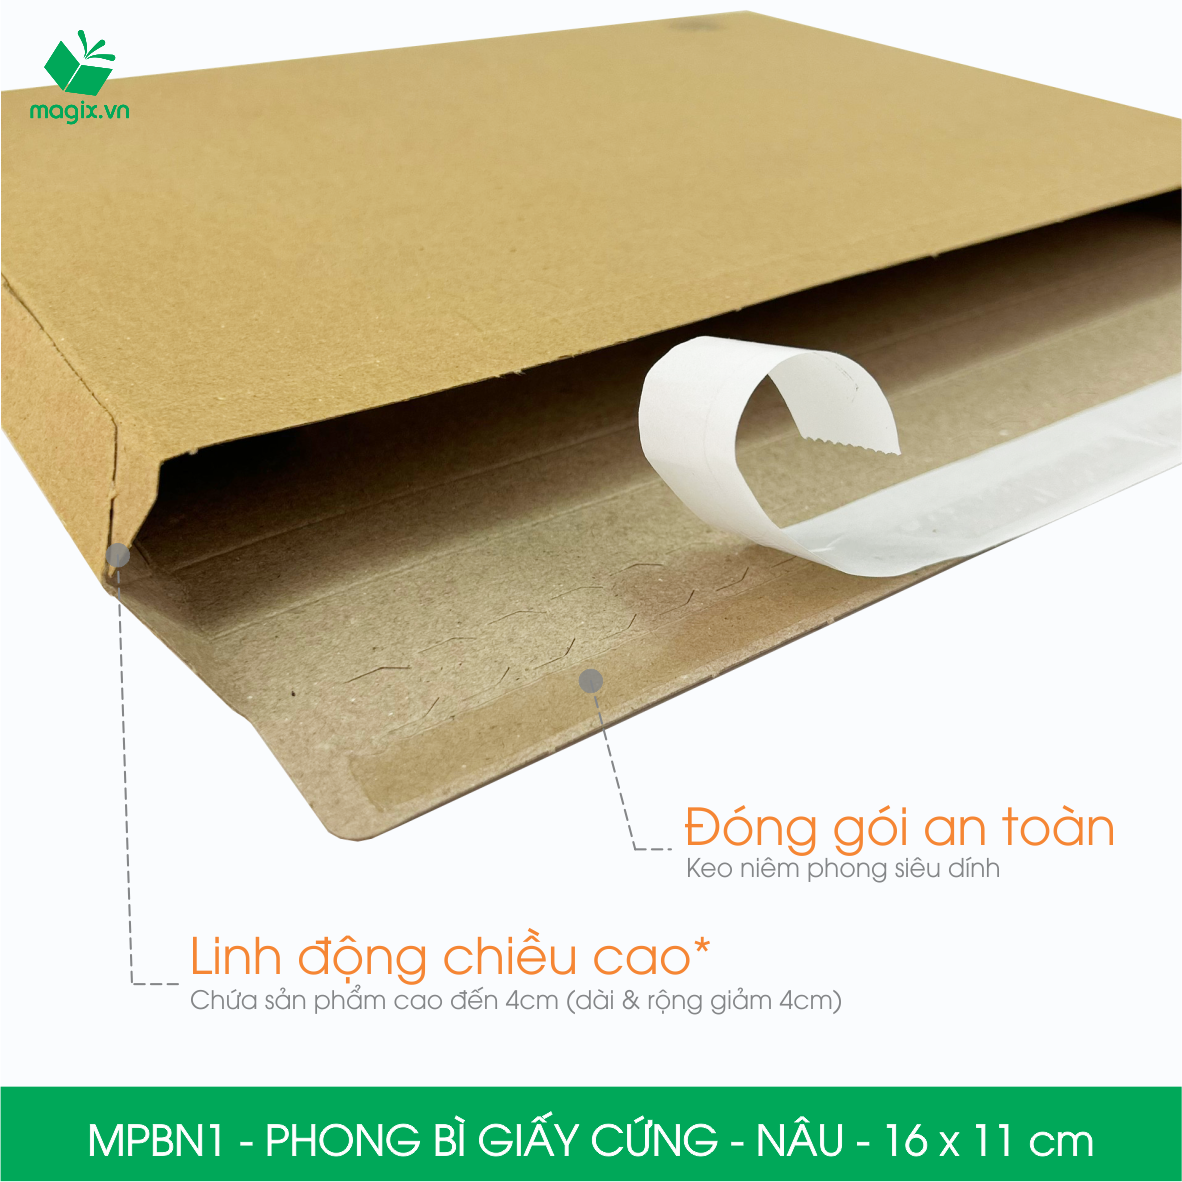 MPBN1 - 16x11 cm - Combo 20 phong bì giấy cứng đóng hàng màu nâu thay thế túi gói hàng